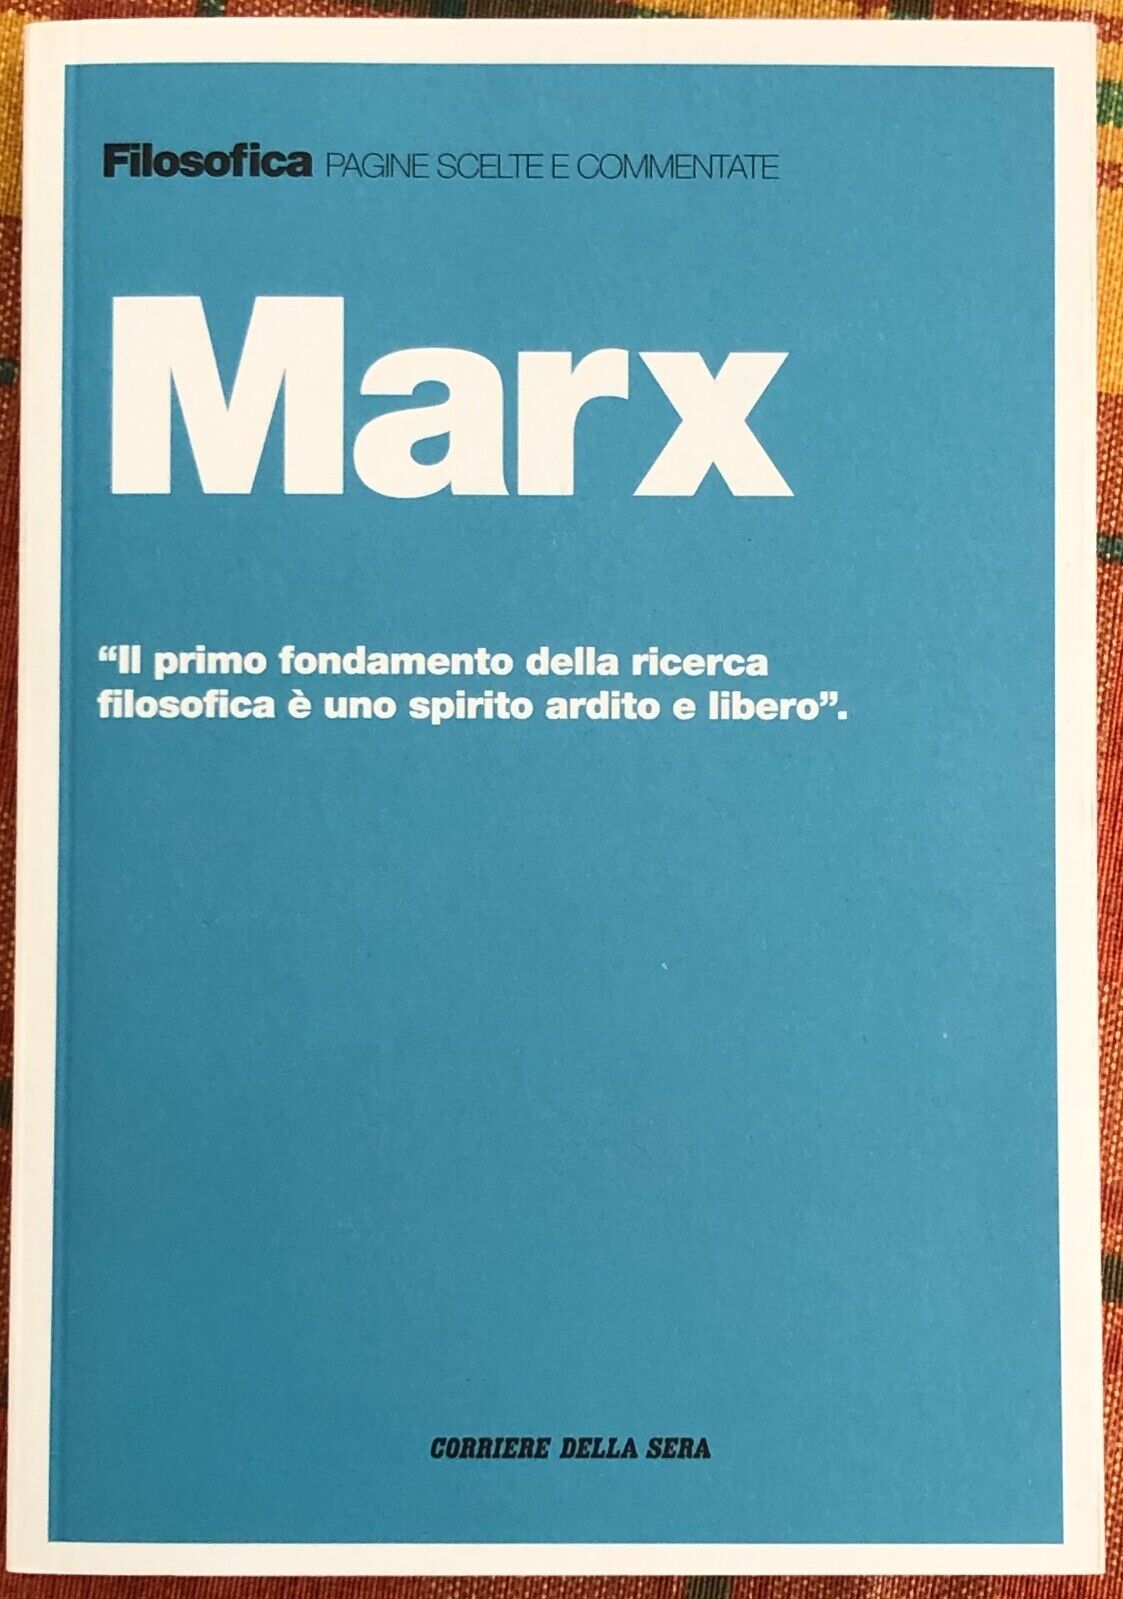 Filosofica. Pagine scelte e commentate n. 29 - Marx di Aa.vv., 2021, Corriere